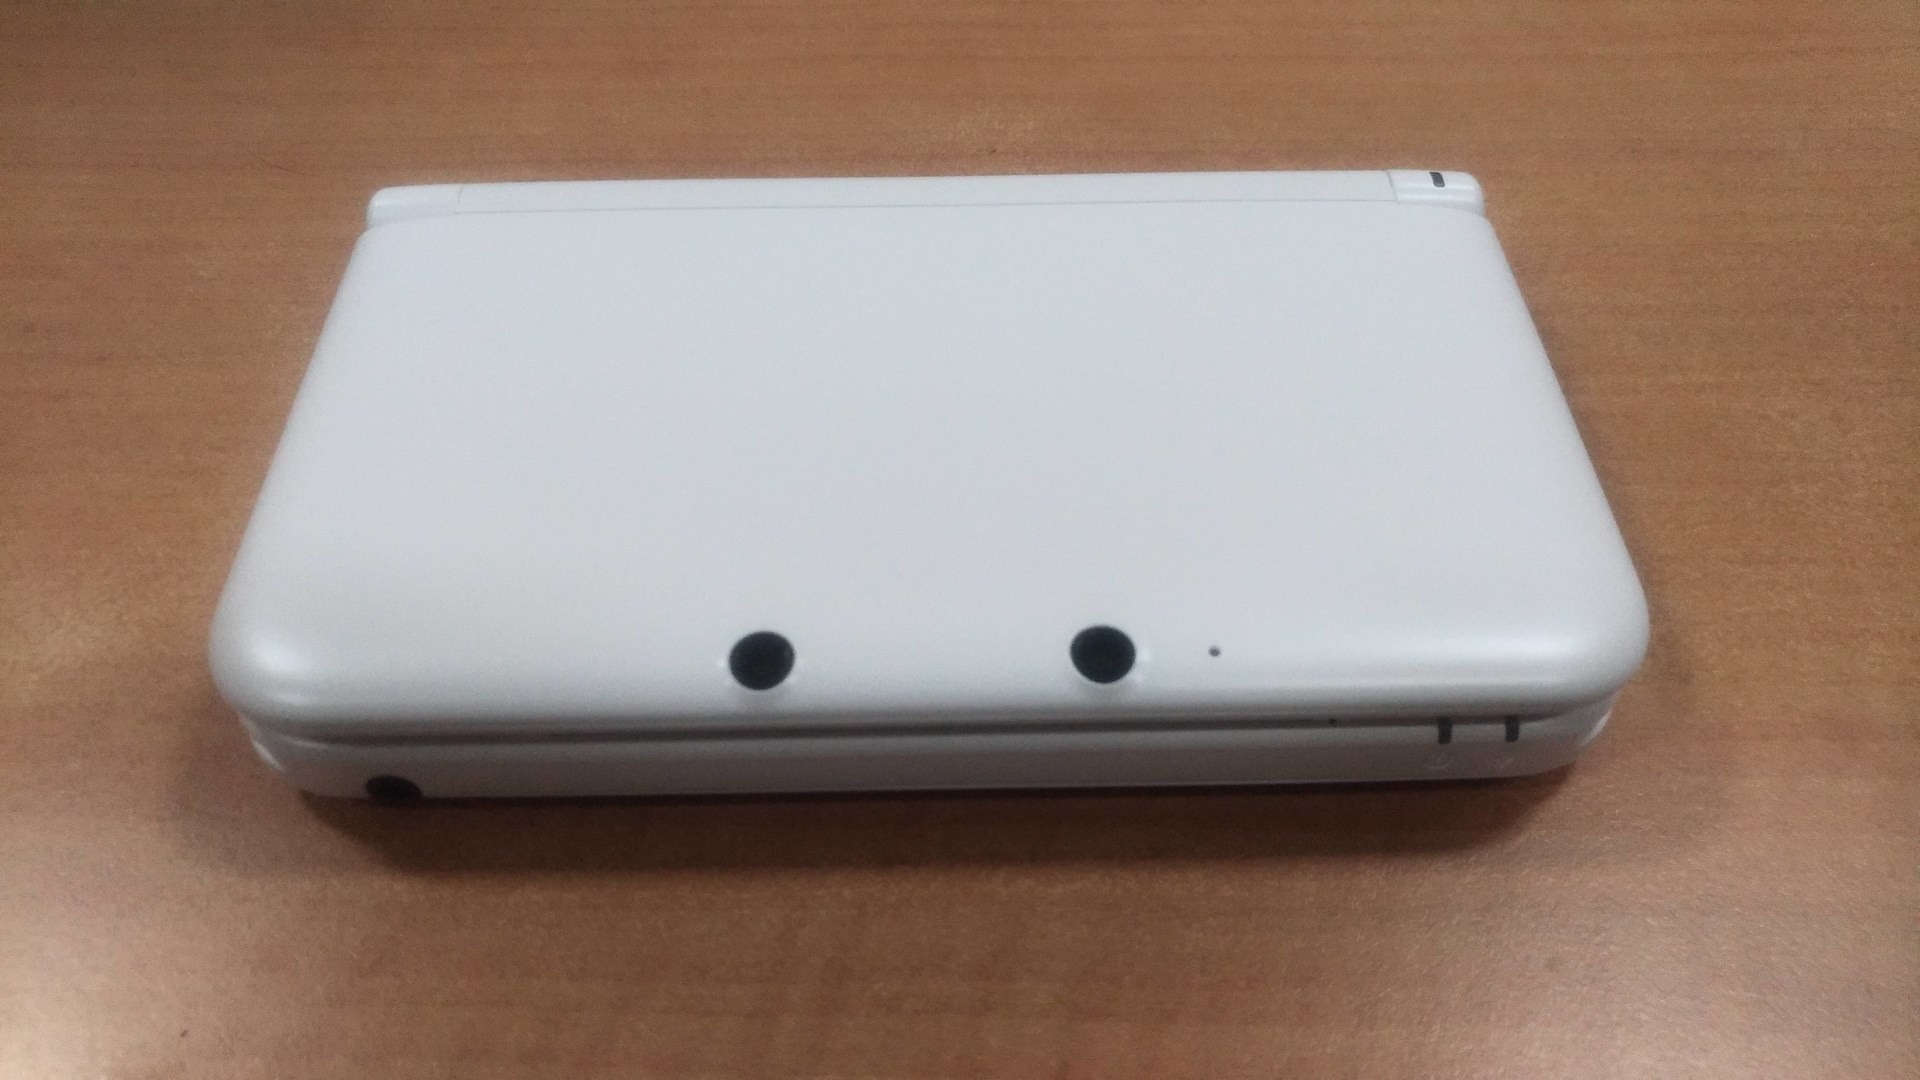 主機收藏】3DSLL Nintendo 3DS LL 純白色- a2462365的創作- 巴哈姆特